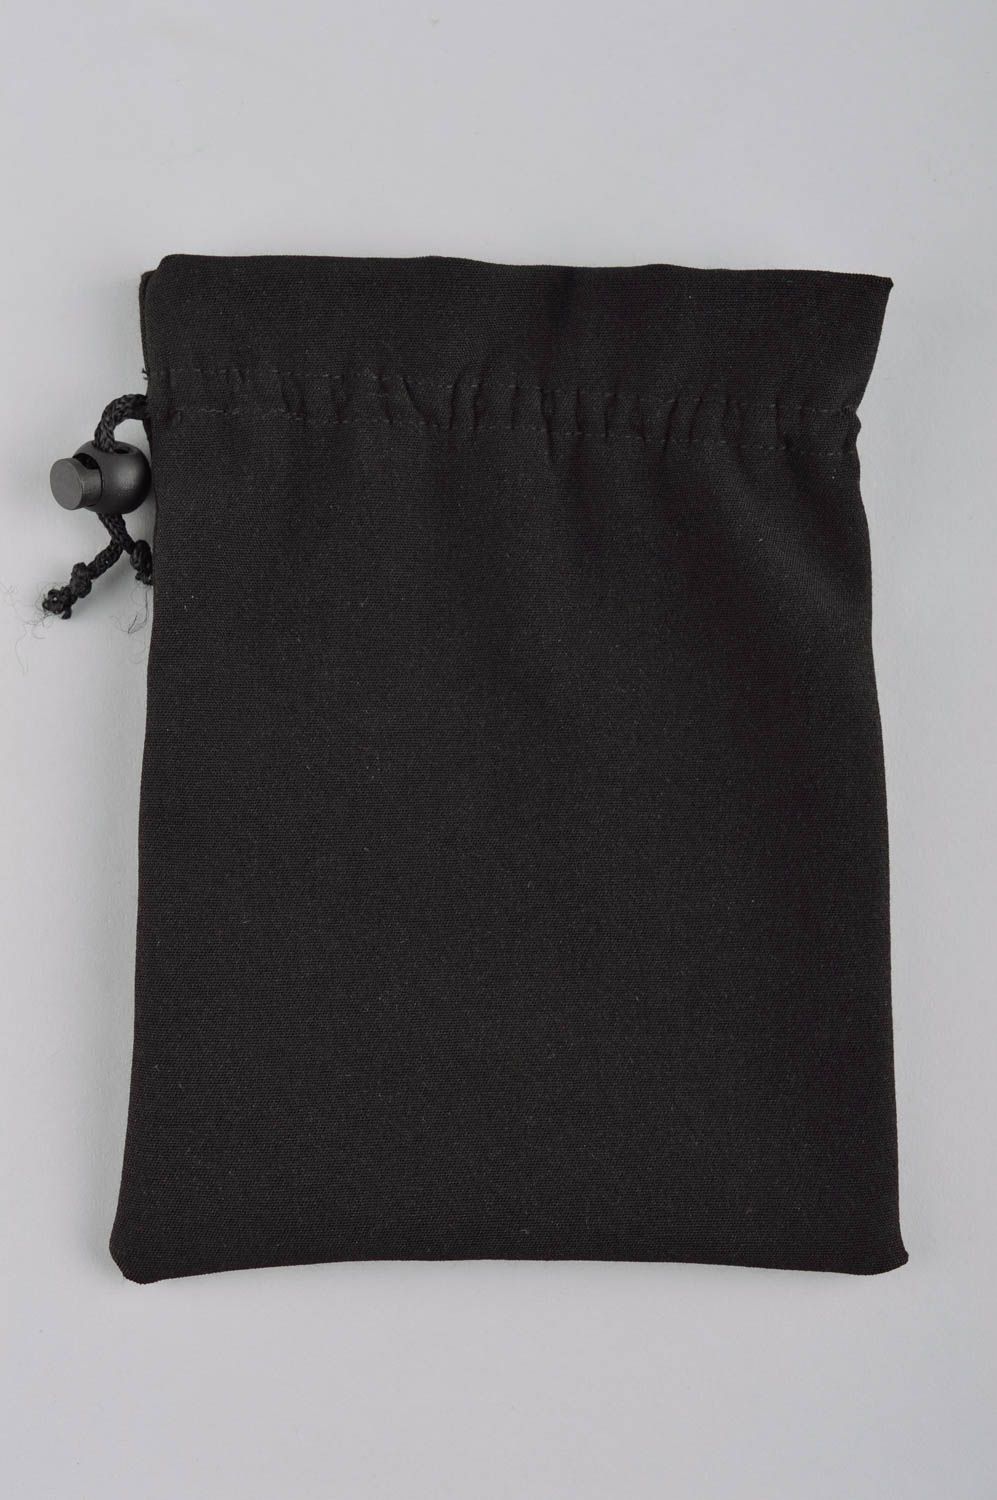 Кошелек из ткани мешочек для монет хенд мейд женский кошелек с вышивкой фото 3